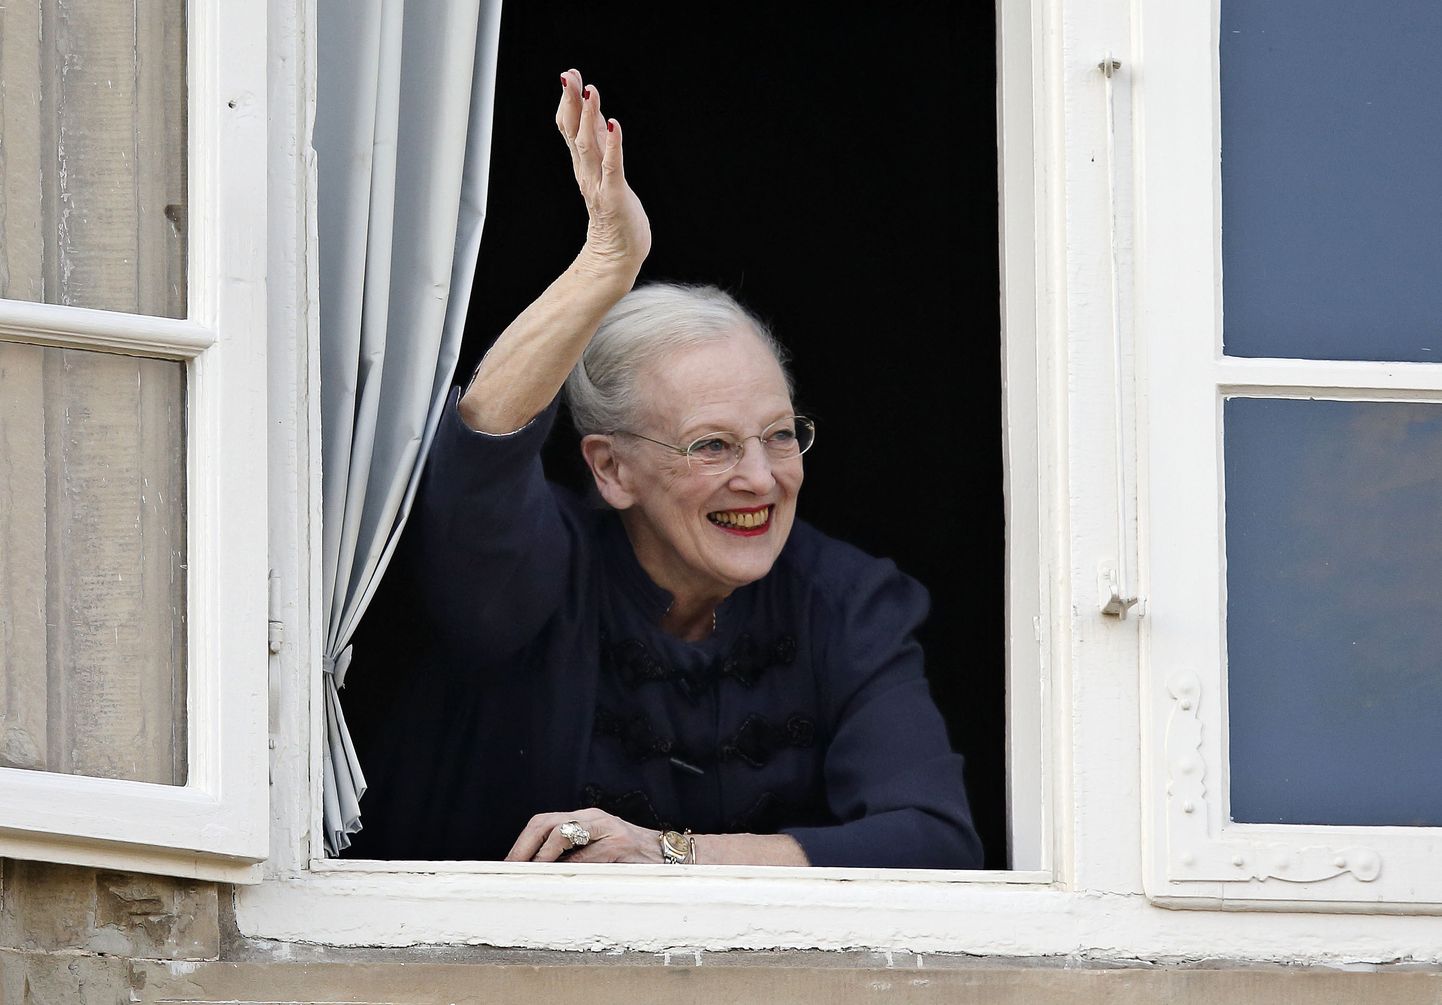 Taani kuninganna Margrethe II lehvitamas 16. aprillil 2015 Fredensborgi lossi aknast